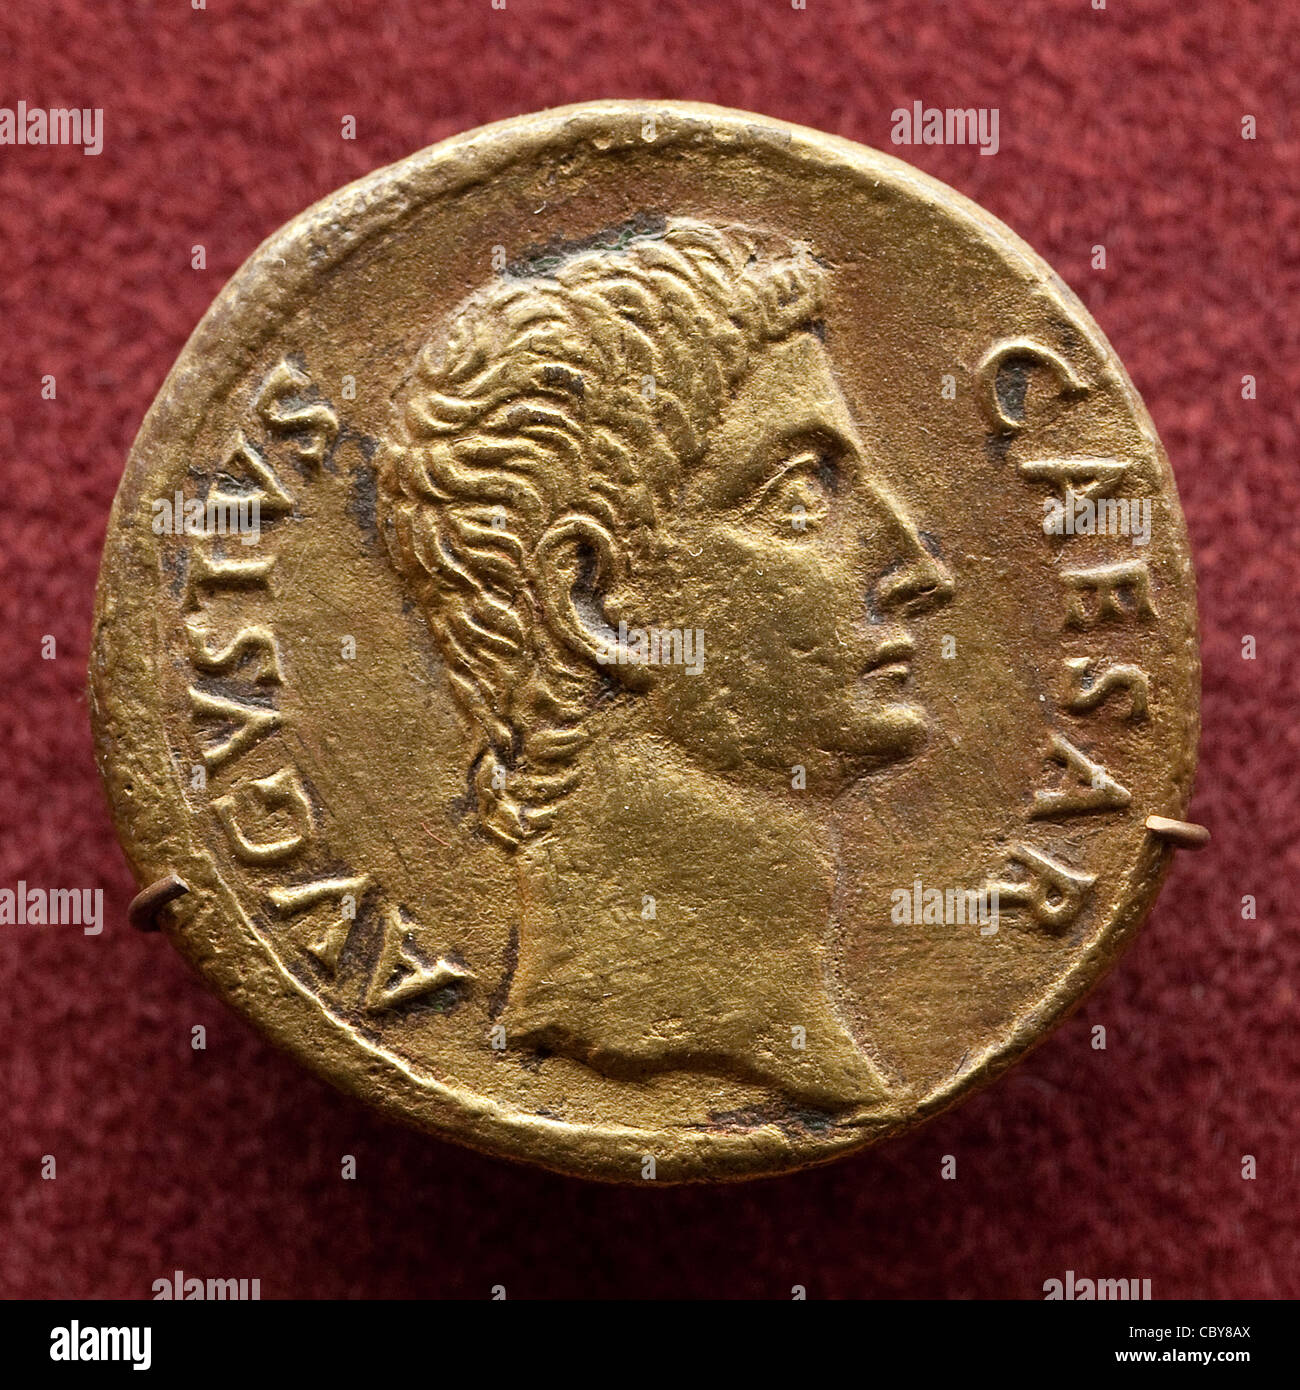 Antico Romano Aurei medaglia raffigurante imperatore romano Gaio Giulio Cesare Augusto Foto Stock